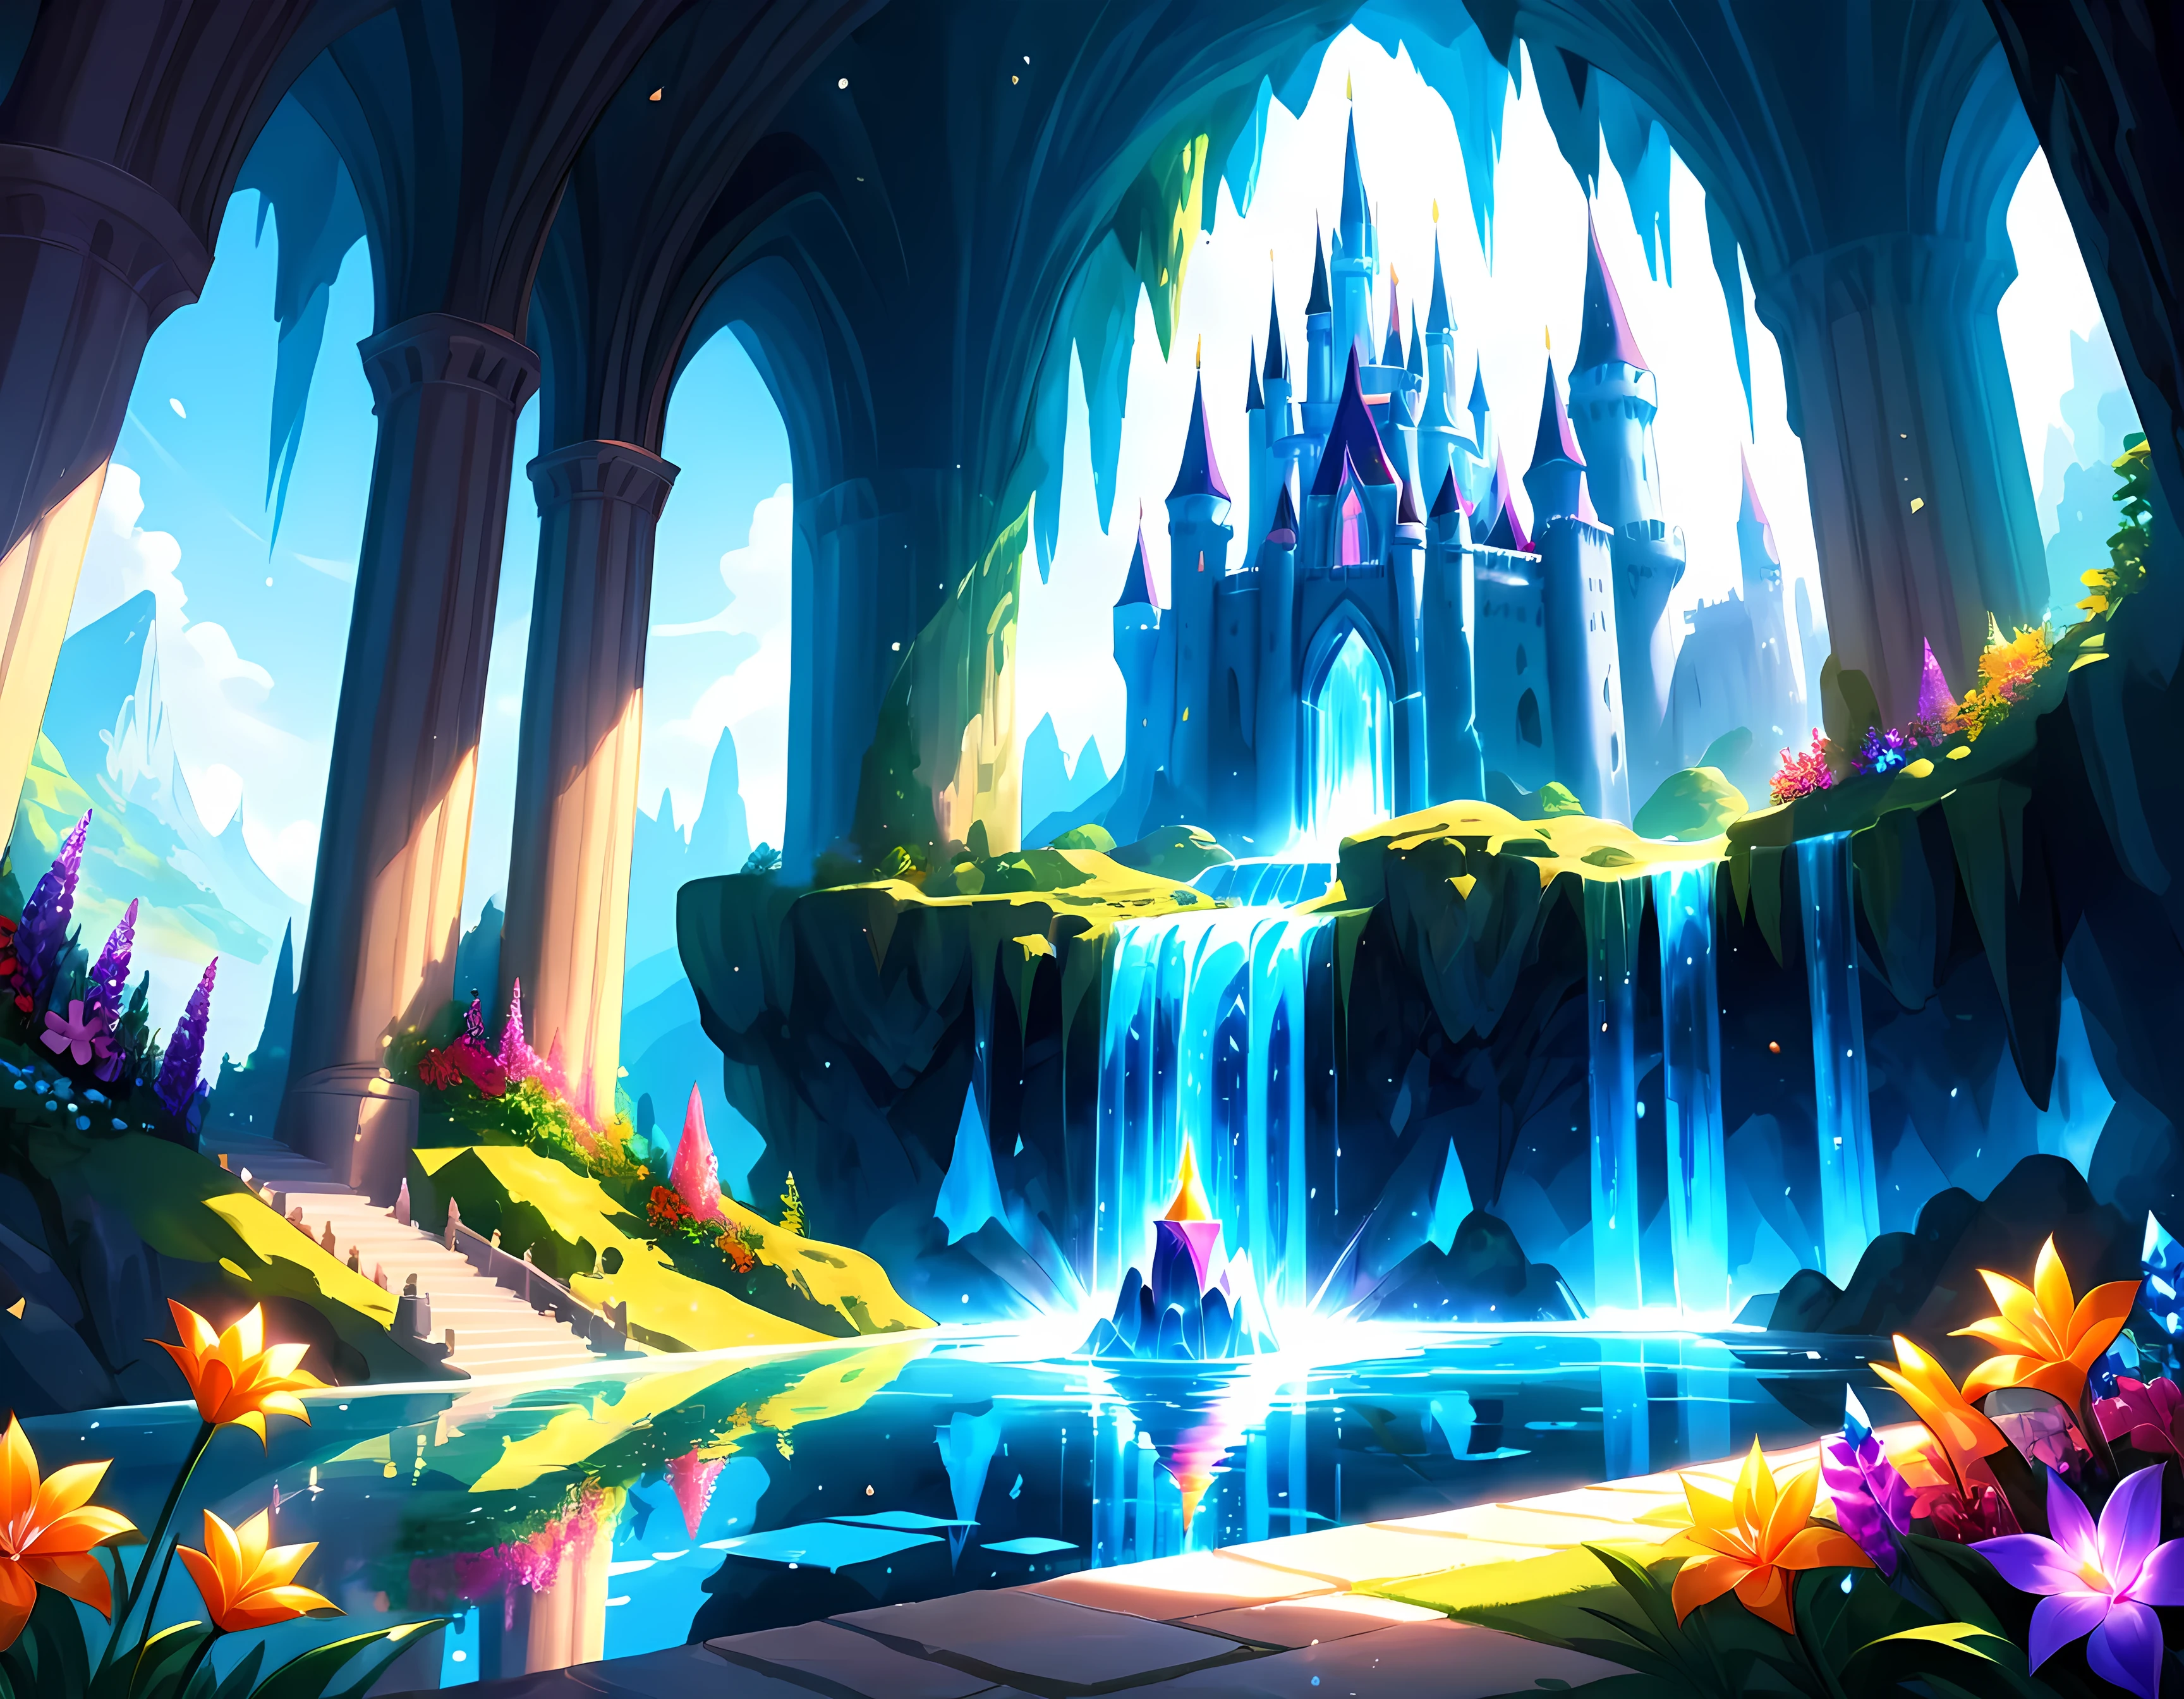 Dessin animé lumineux, à l&#39;intérieur de la grotte mystique au bord de l&#39;abîme se trouve un château de cristal magique, entièrement composé de cristaux chatoyants de différentes couleurs, reflétant la lumière du soleil dans un affichage éblouissant, autour du château se trouvent des jardins vibrants remplis de fleurs exotiques et de cascades étincelantes, Chef-d&#39;œuvre en résolution maximale de 16K, Superbe qualité